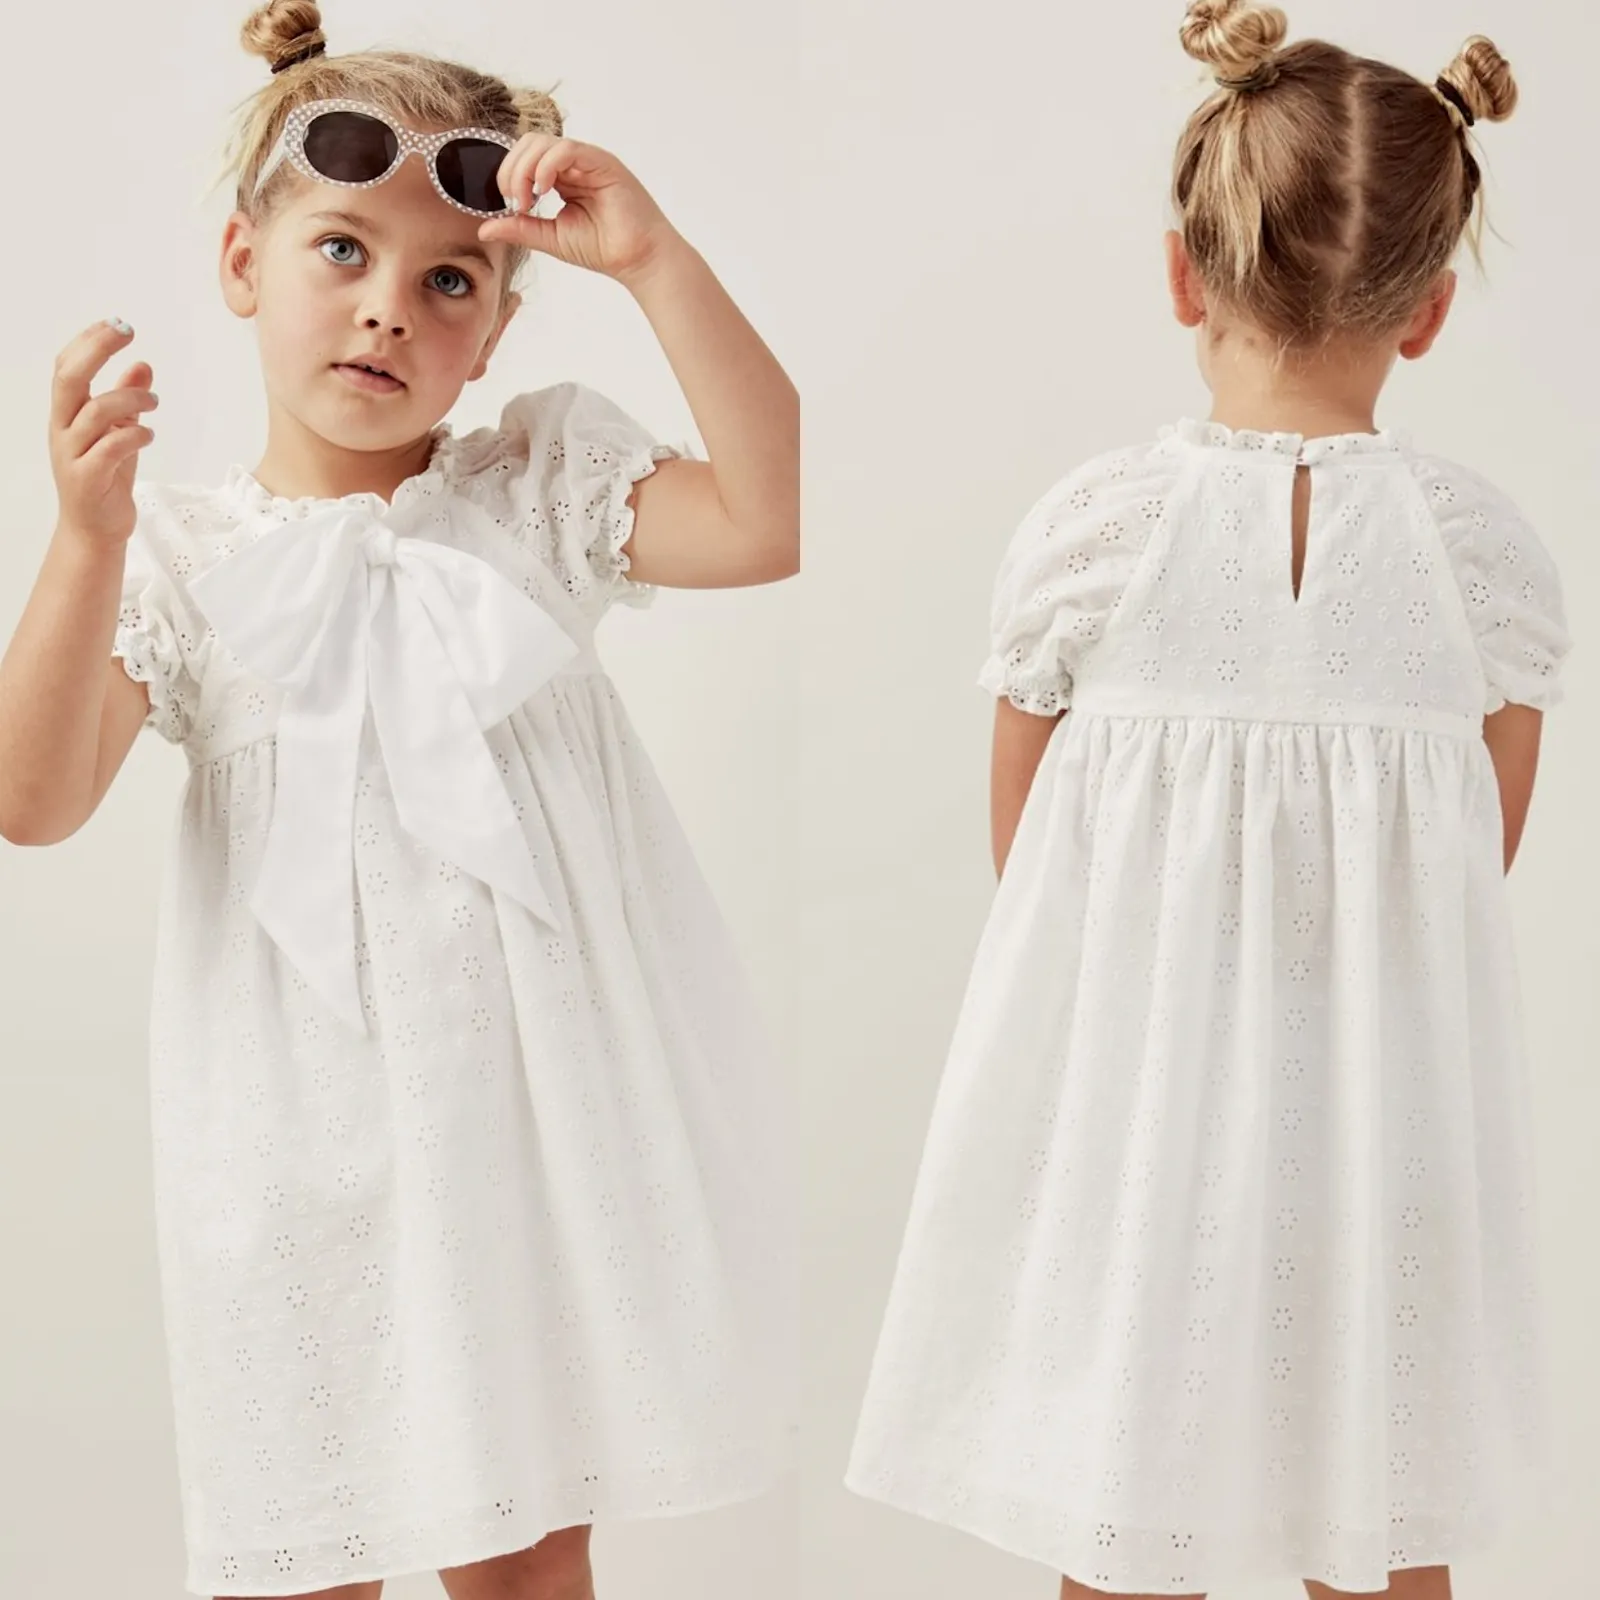 Ropa de niños de moda nueva llegada ropa de bebé de algodón bordado Belice arco suave elástico mangas vestidos de niña